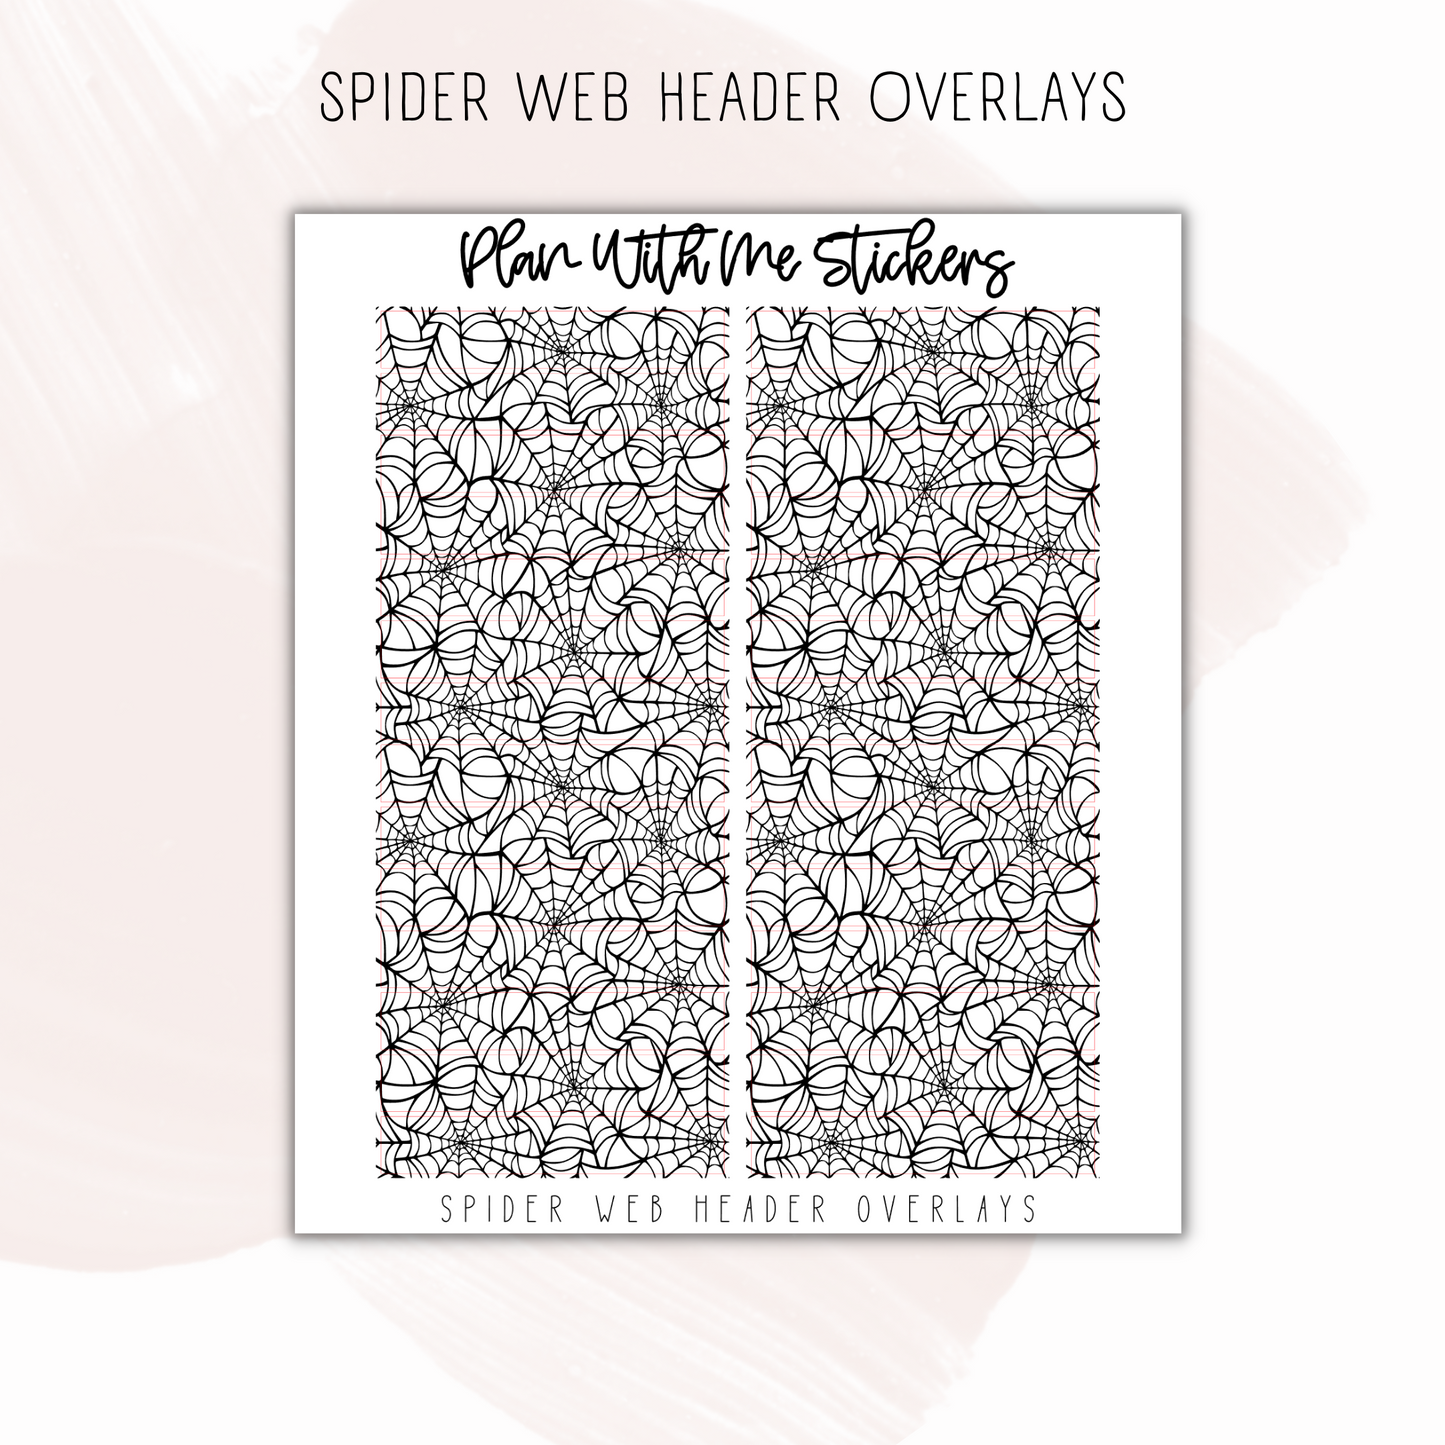 Spider Web Header Overlays